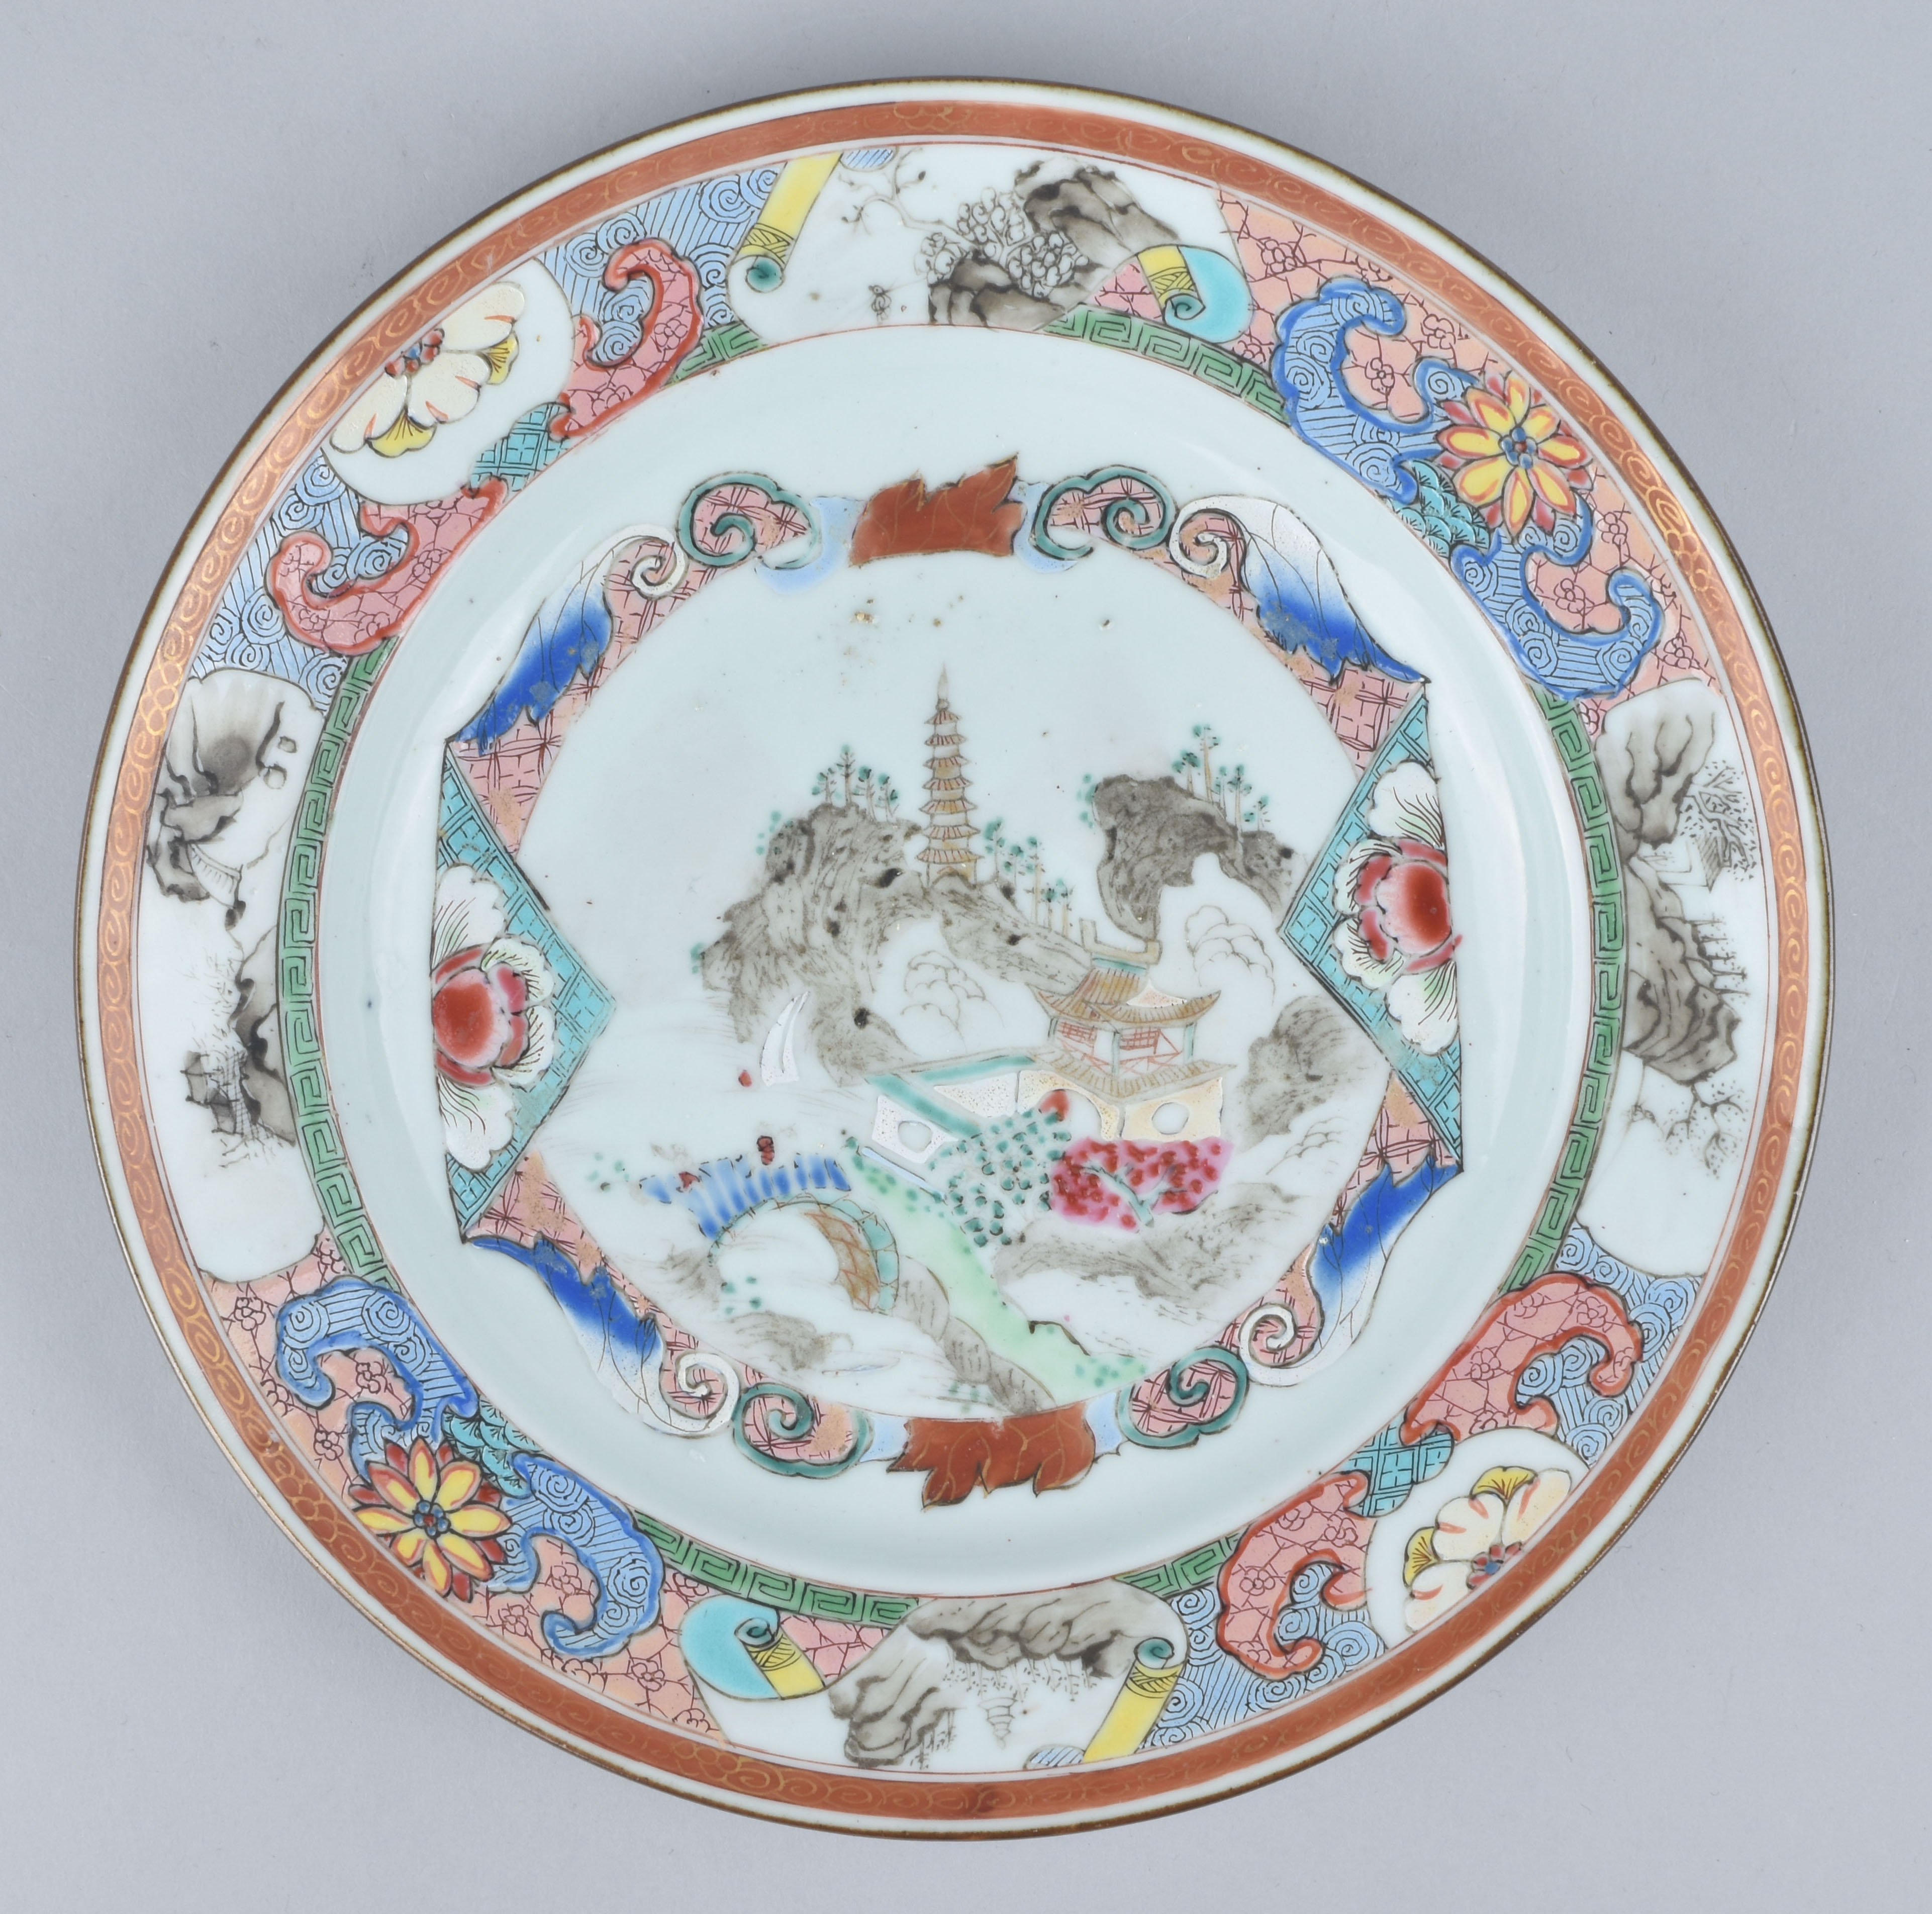 Famille rose Porcelain Yongzheng (1723-1735) or Qianlong period (1736-1795), circa 1730-1740, China